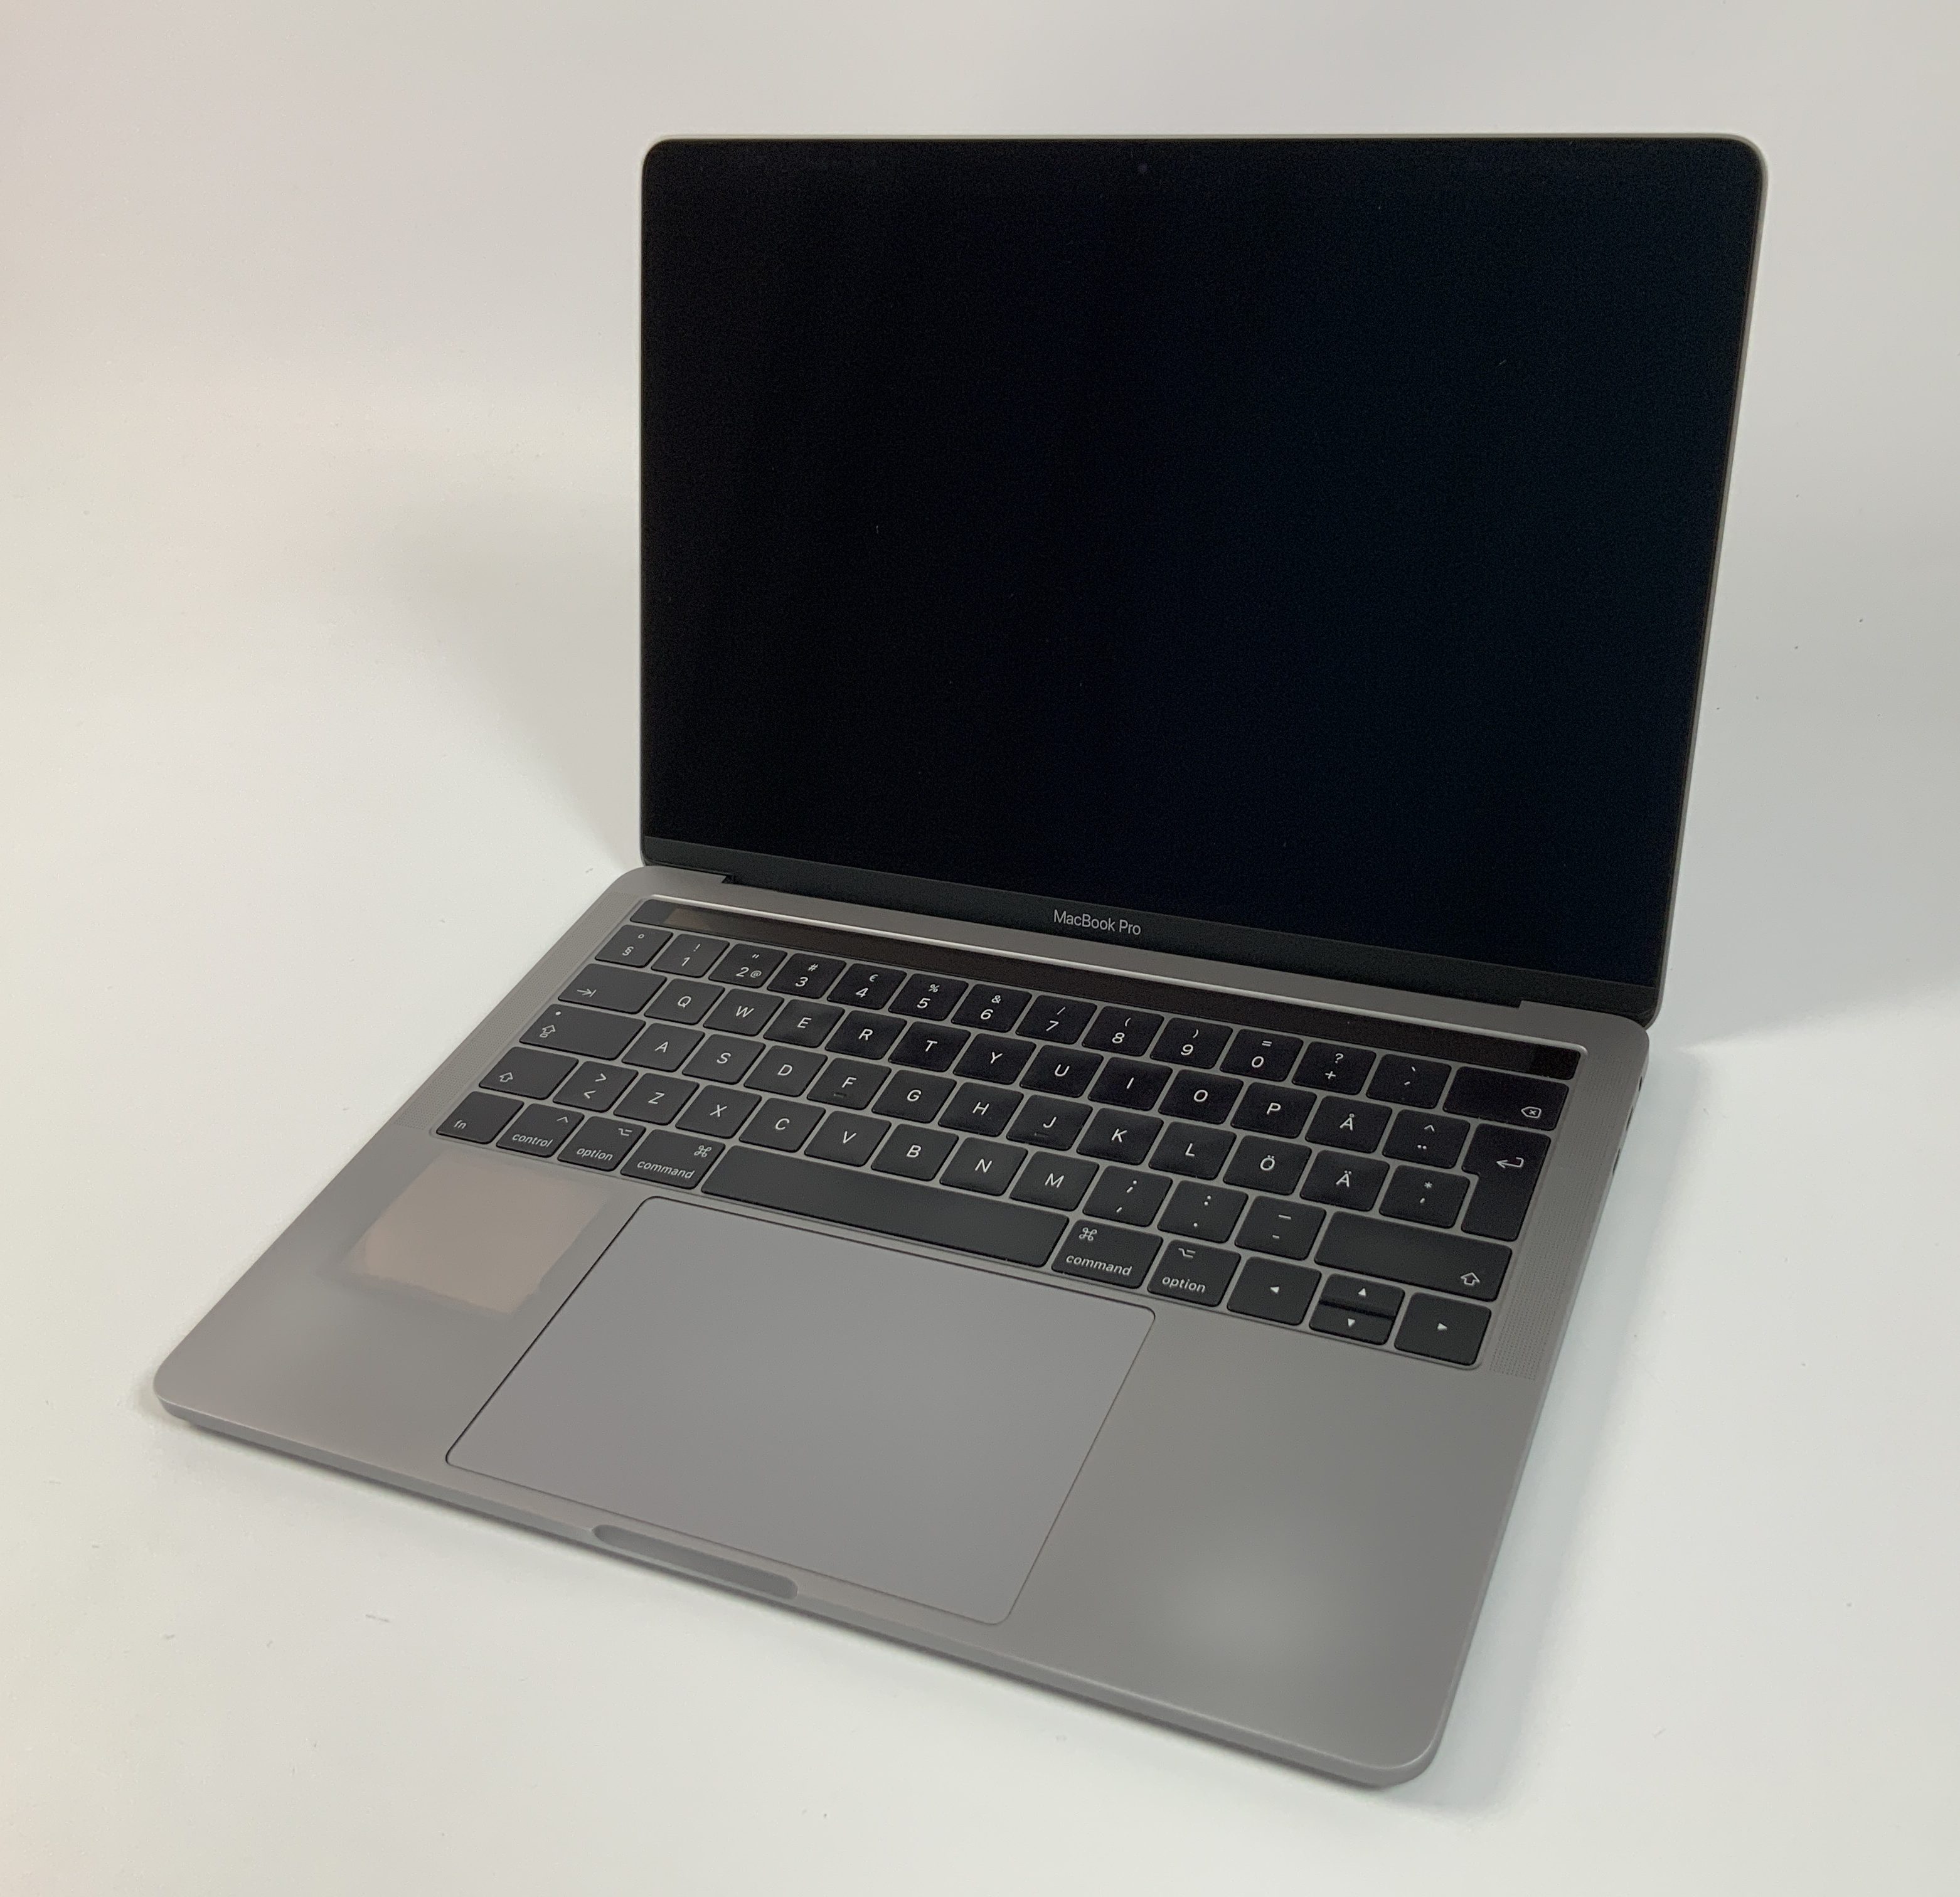 MacBook Pro 13" 4TBT Mid 2017 (Intel Core i5 3.1 GHz 8 GB RAM 512 GB SSD), Space Gray, Intel Core i5 3.1 GHz, 8 GB RAM, 512 GB SSD, immagine 1